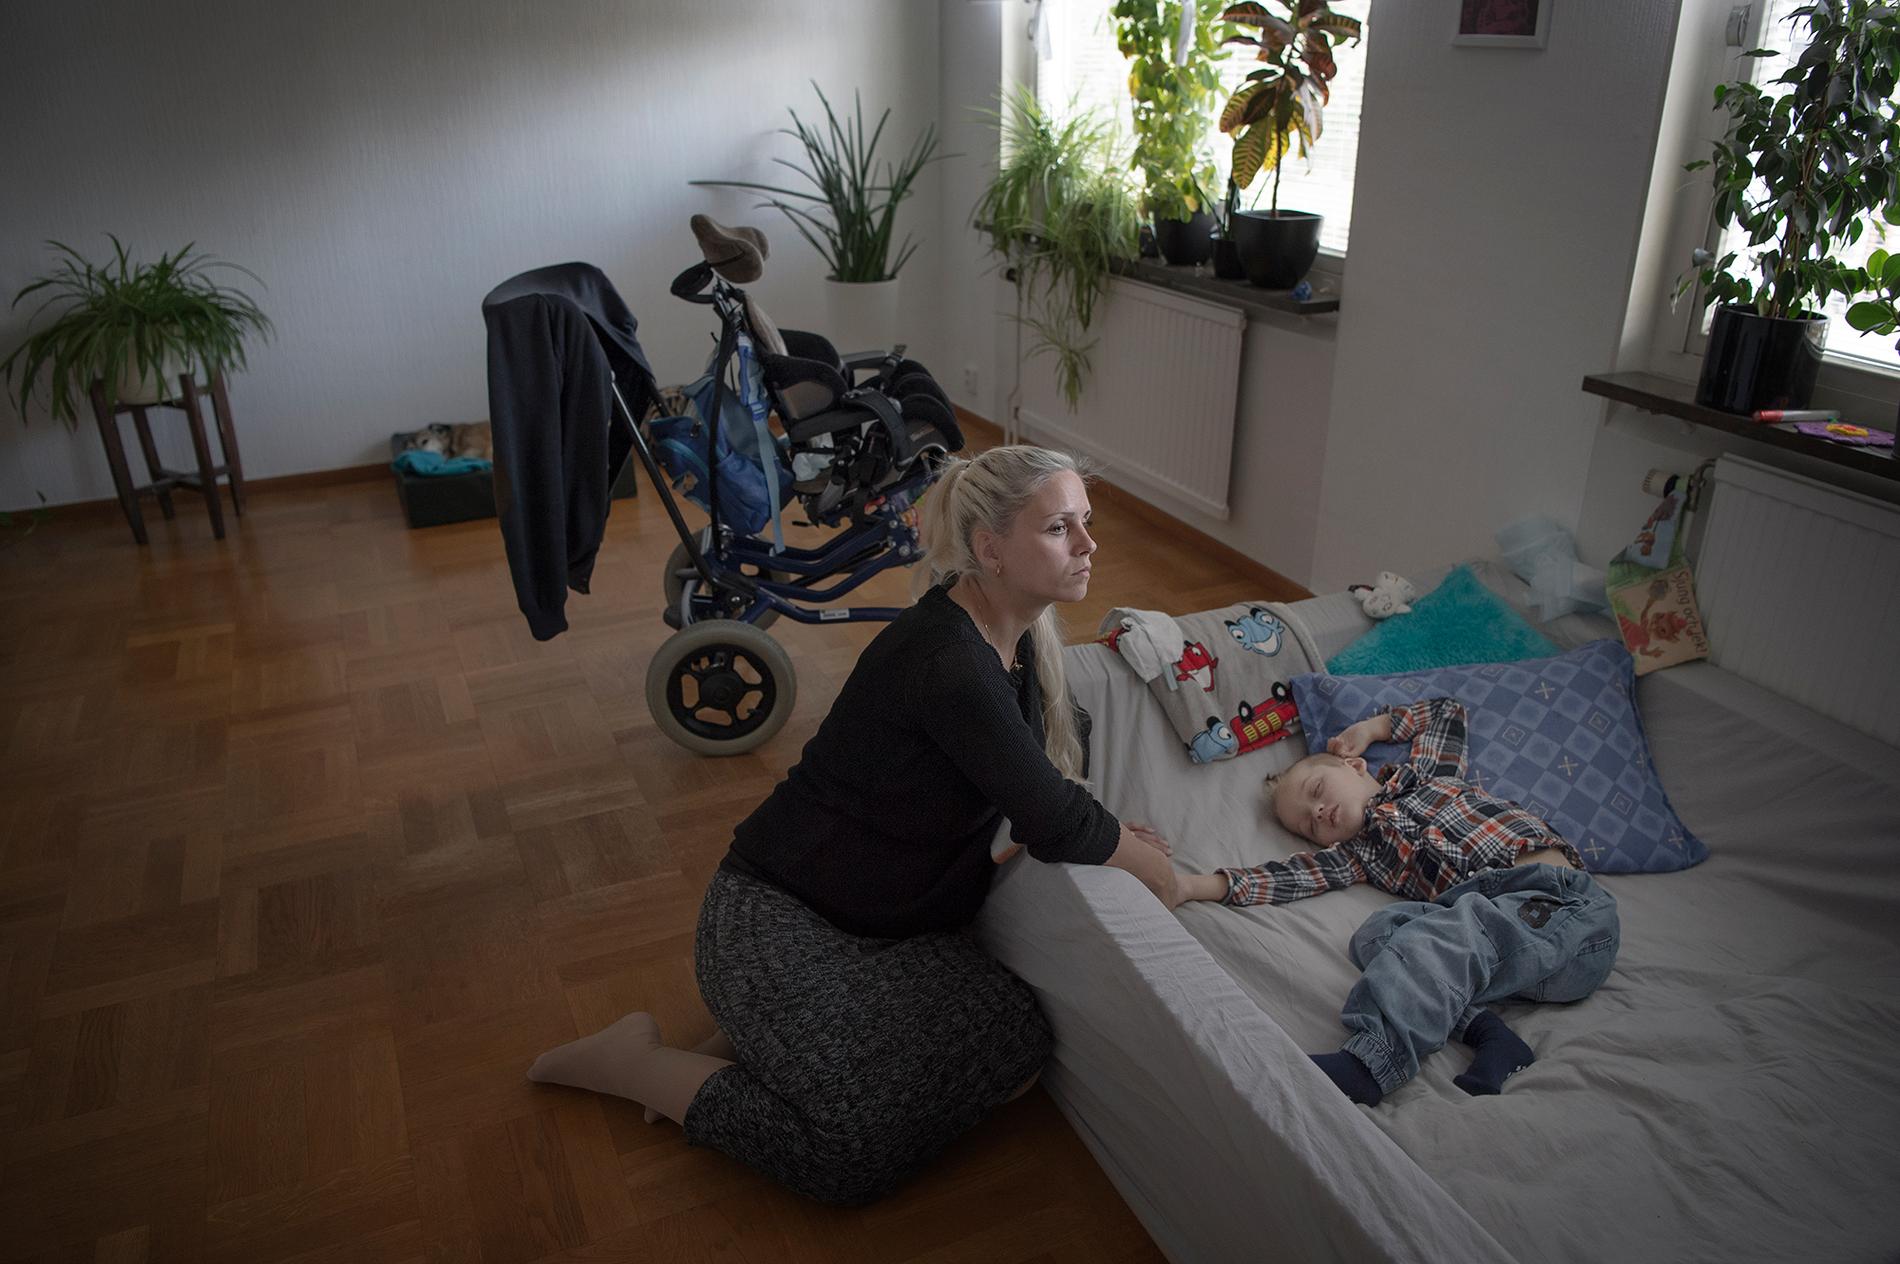 "Cimon är som en tvåmånaders bebis, han kan absolut ingenting", säger Lina Andersson. På dagarna ligger Cimon ofta i en bassäng av skumgummi på golvet i vardagsrummet.